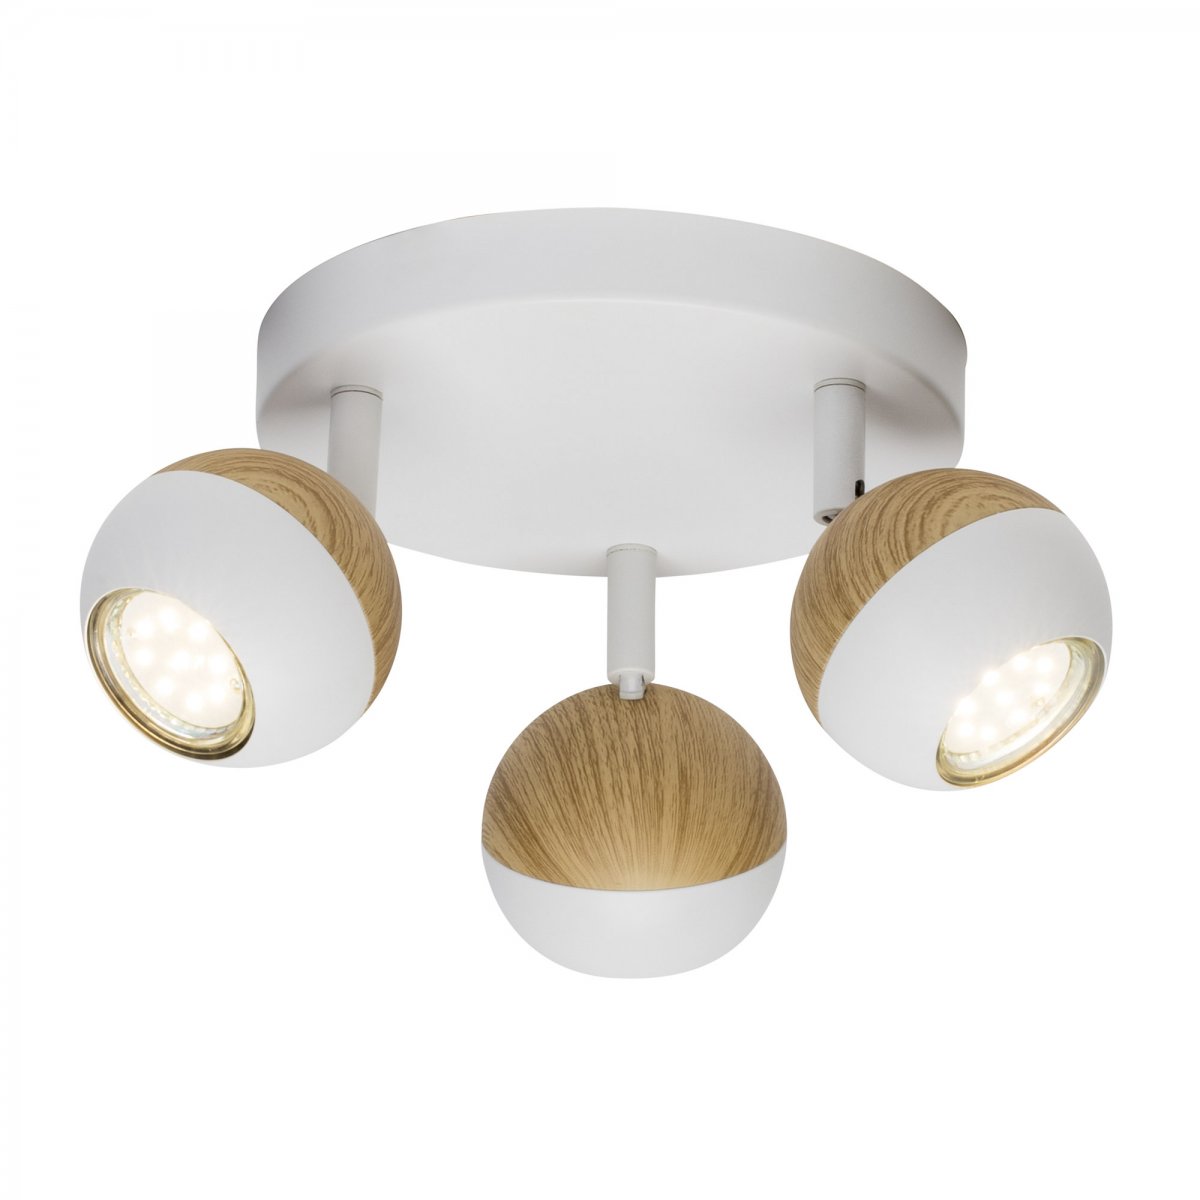 Brilliant Leuchten No. G59434-75 LED 3-flammig online --> GU10 weiß Scan Leuchten Lampen holz & Spotrondell kaufen 3W